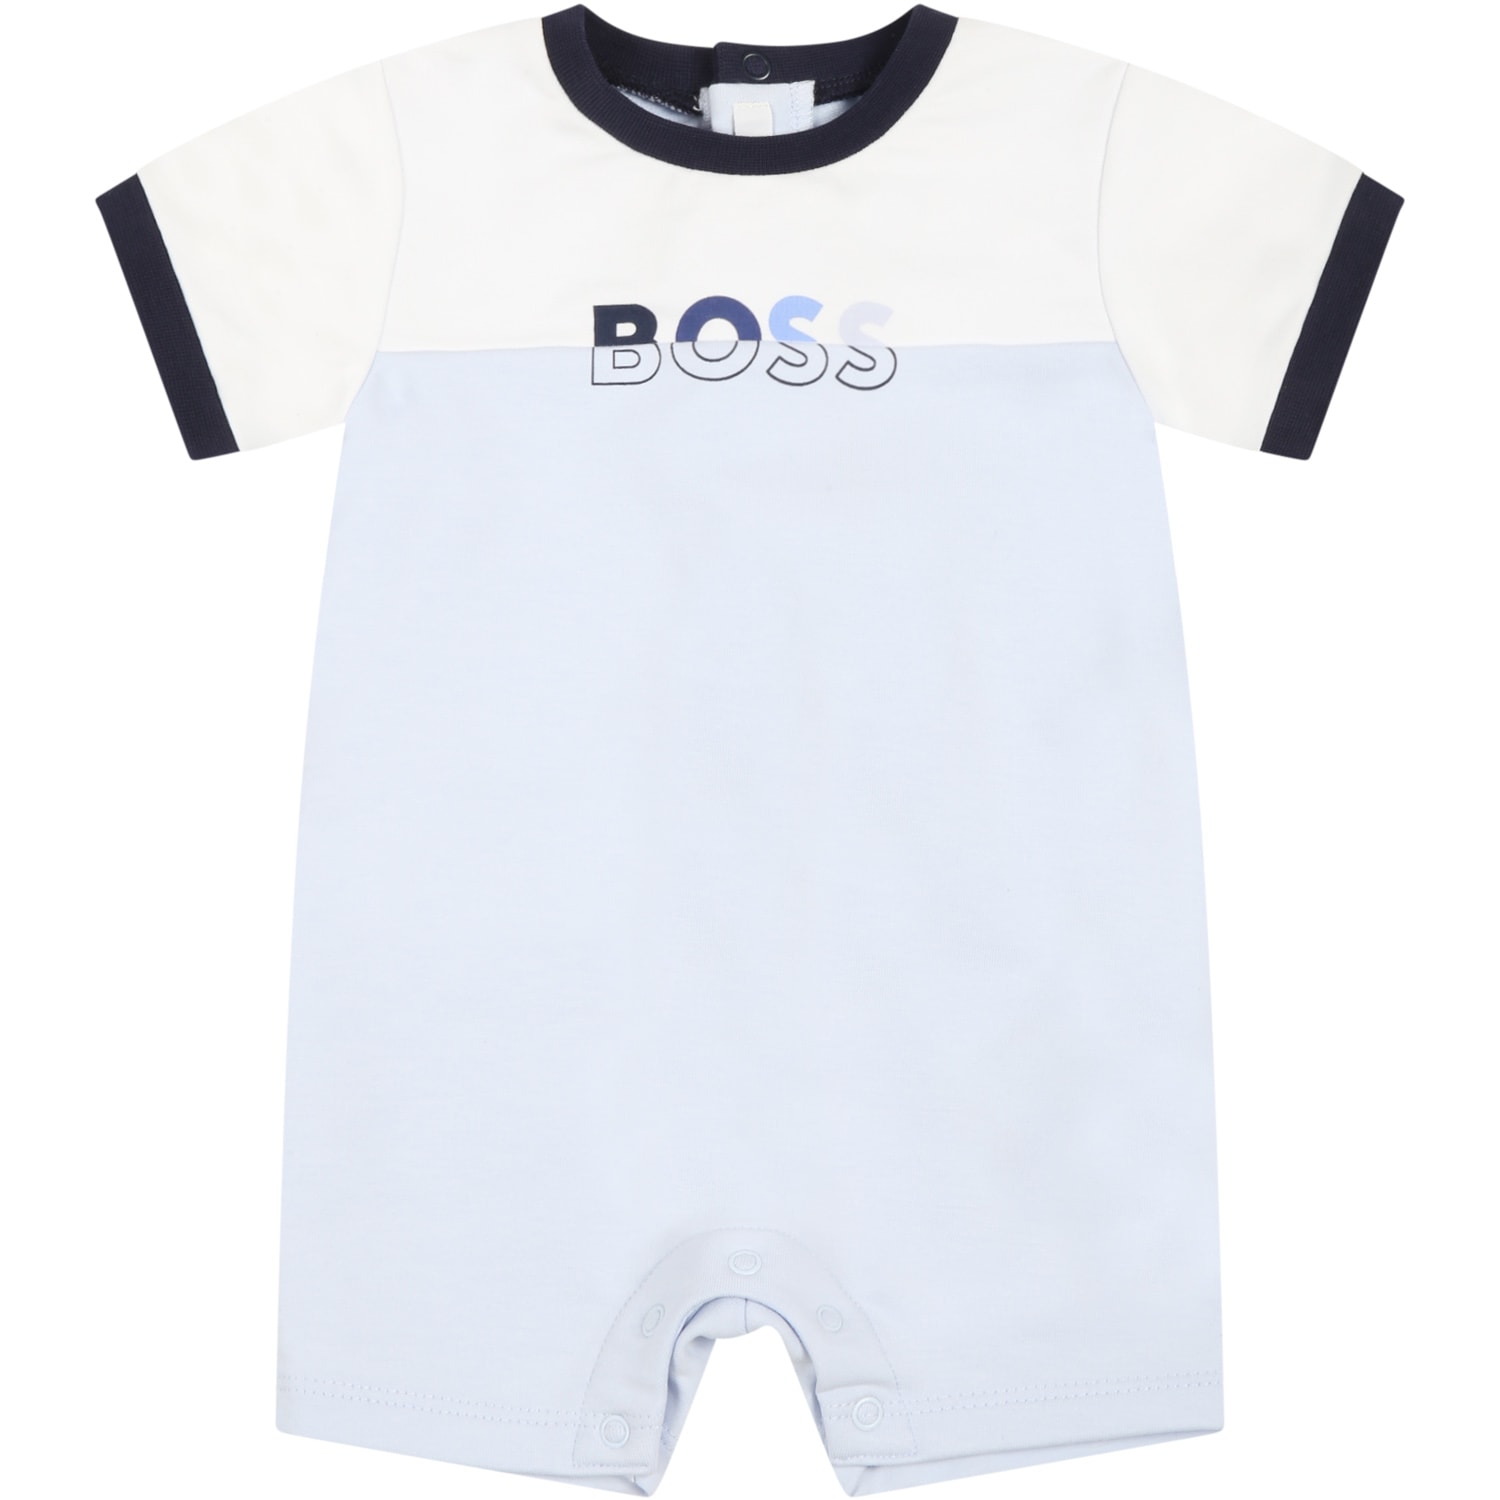 Hugo Boss Light Blue Romper For Baby Boy With Logo